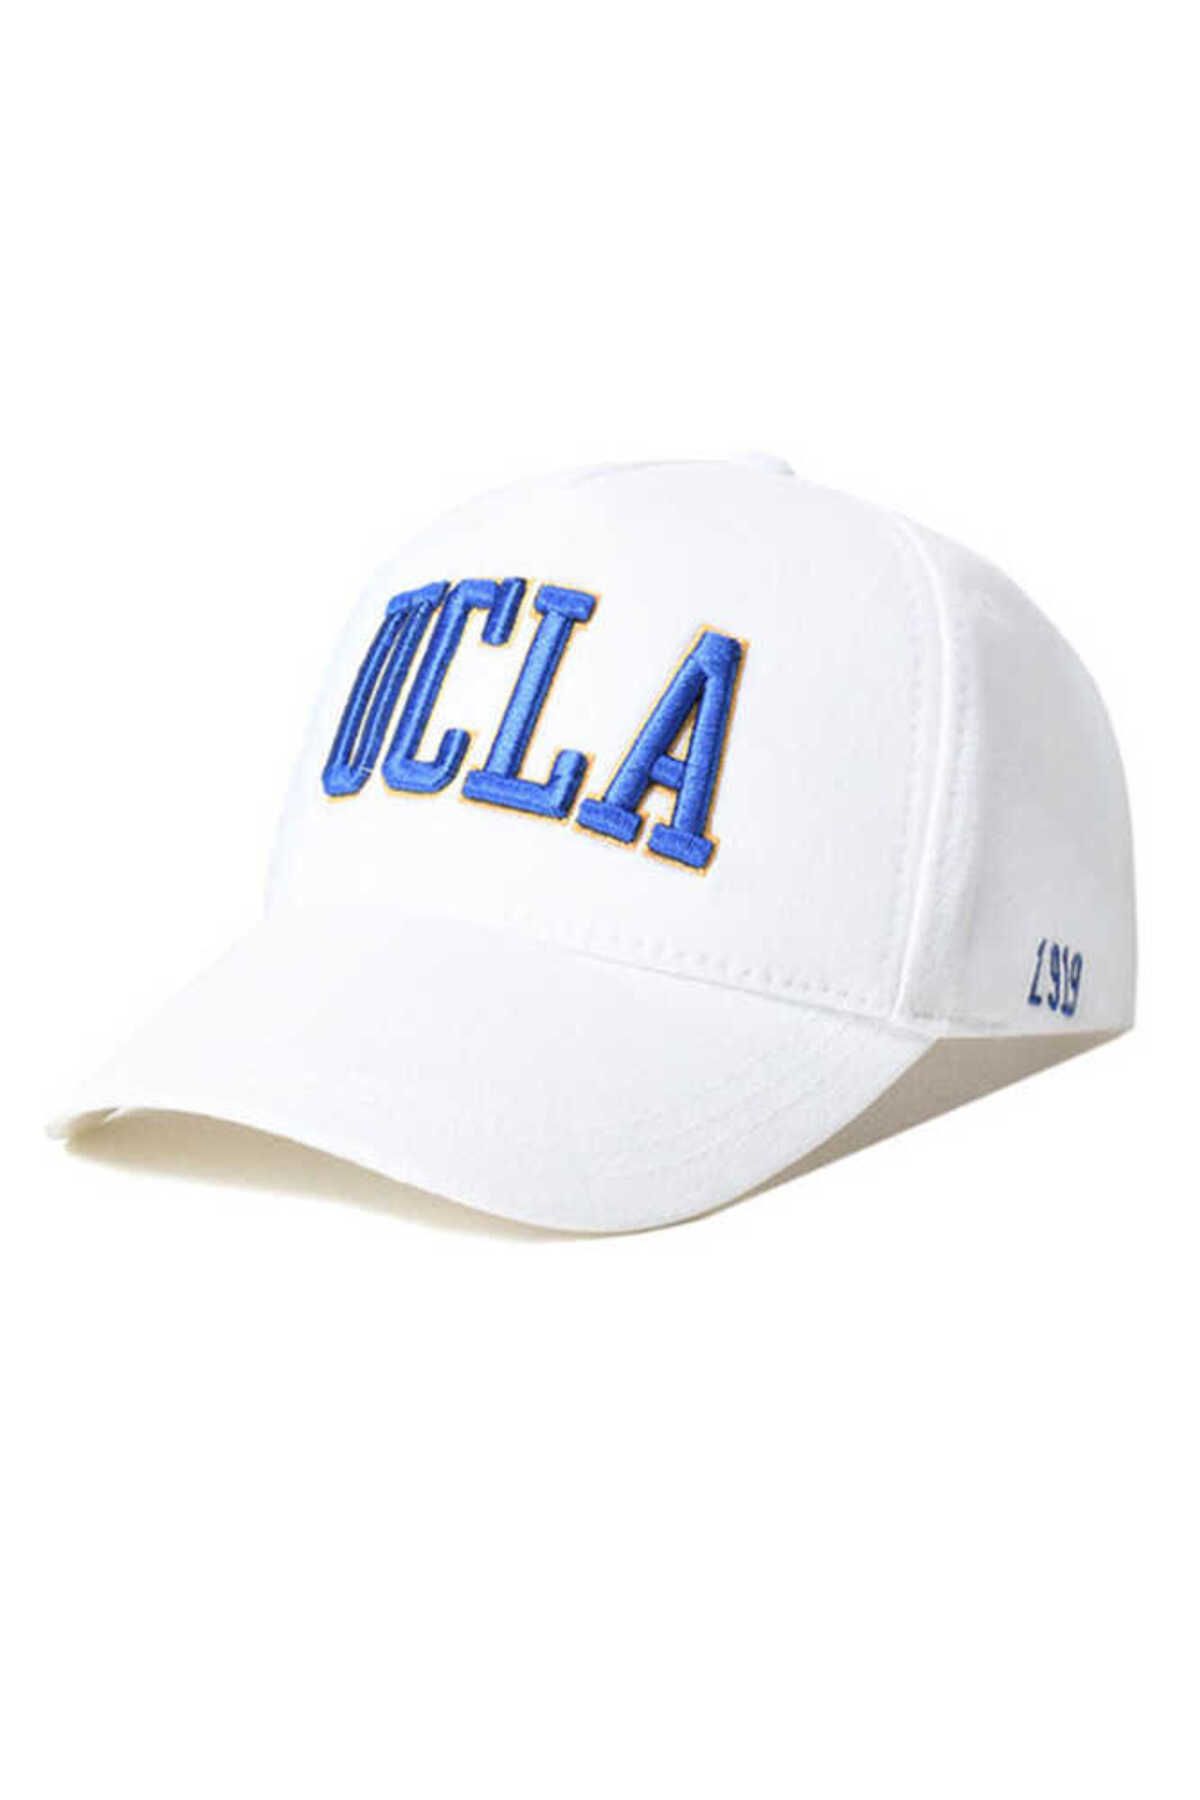 Ucla Ranch Beyaz Baseball Cap Nakışlı Şapka